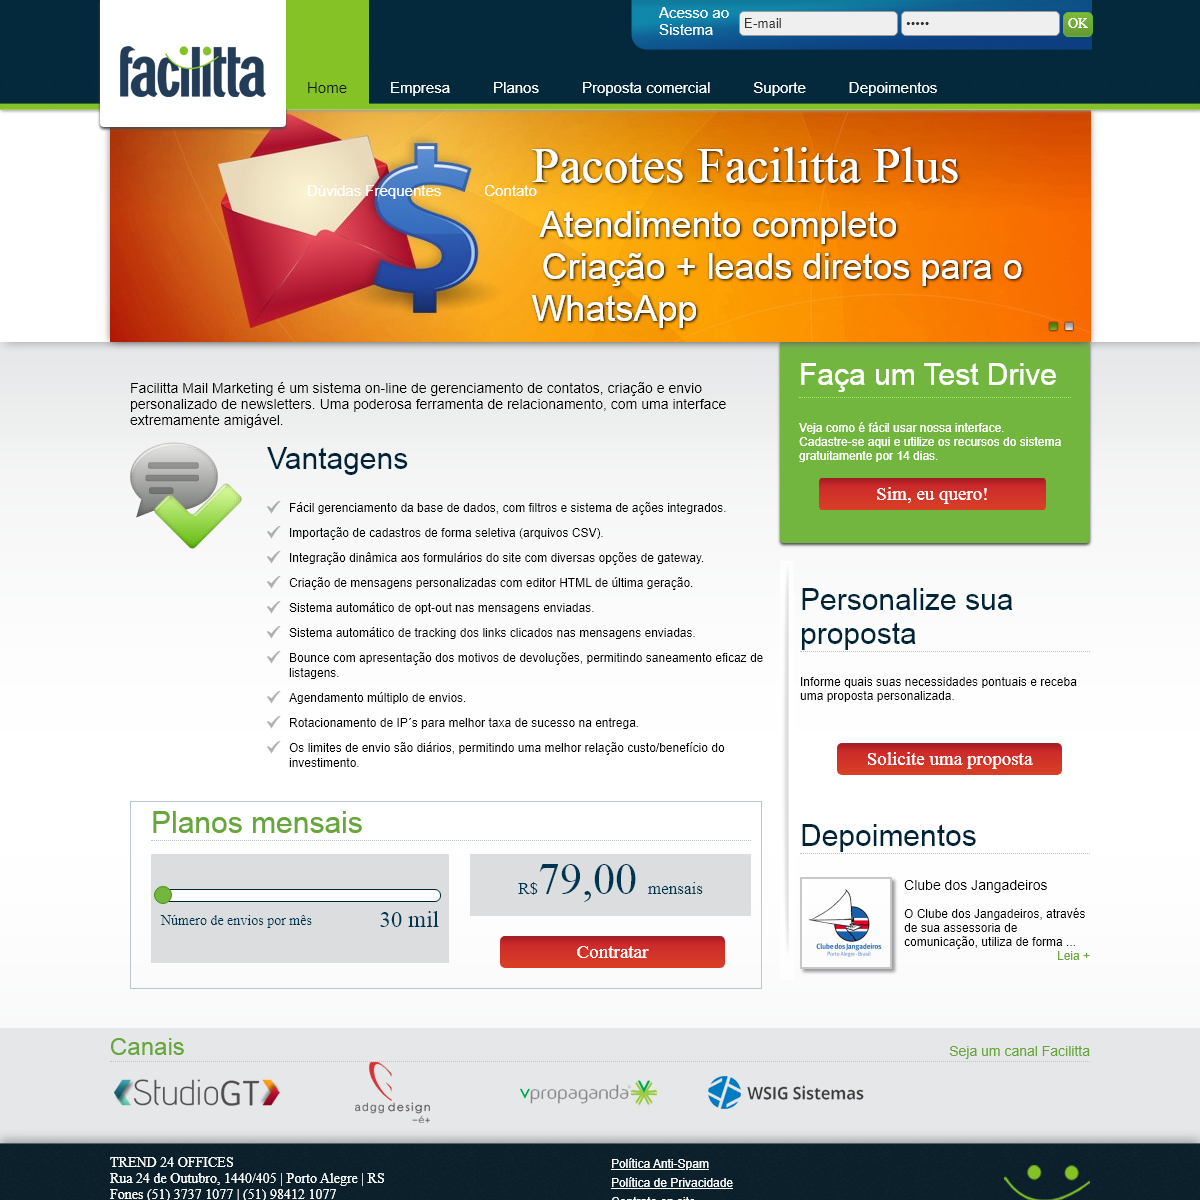 A complete backup of facilitta.com.br